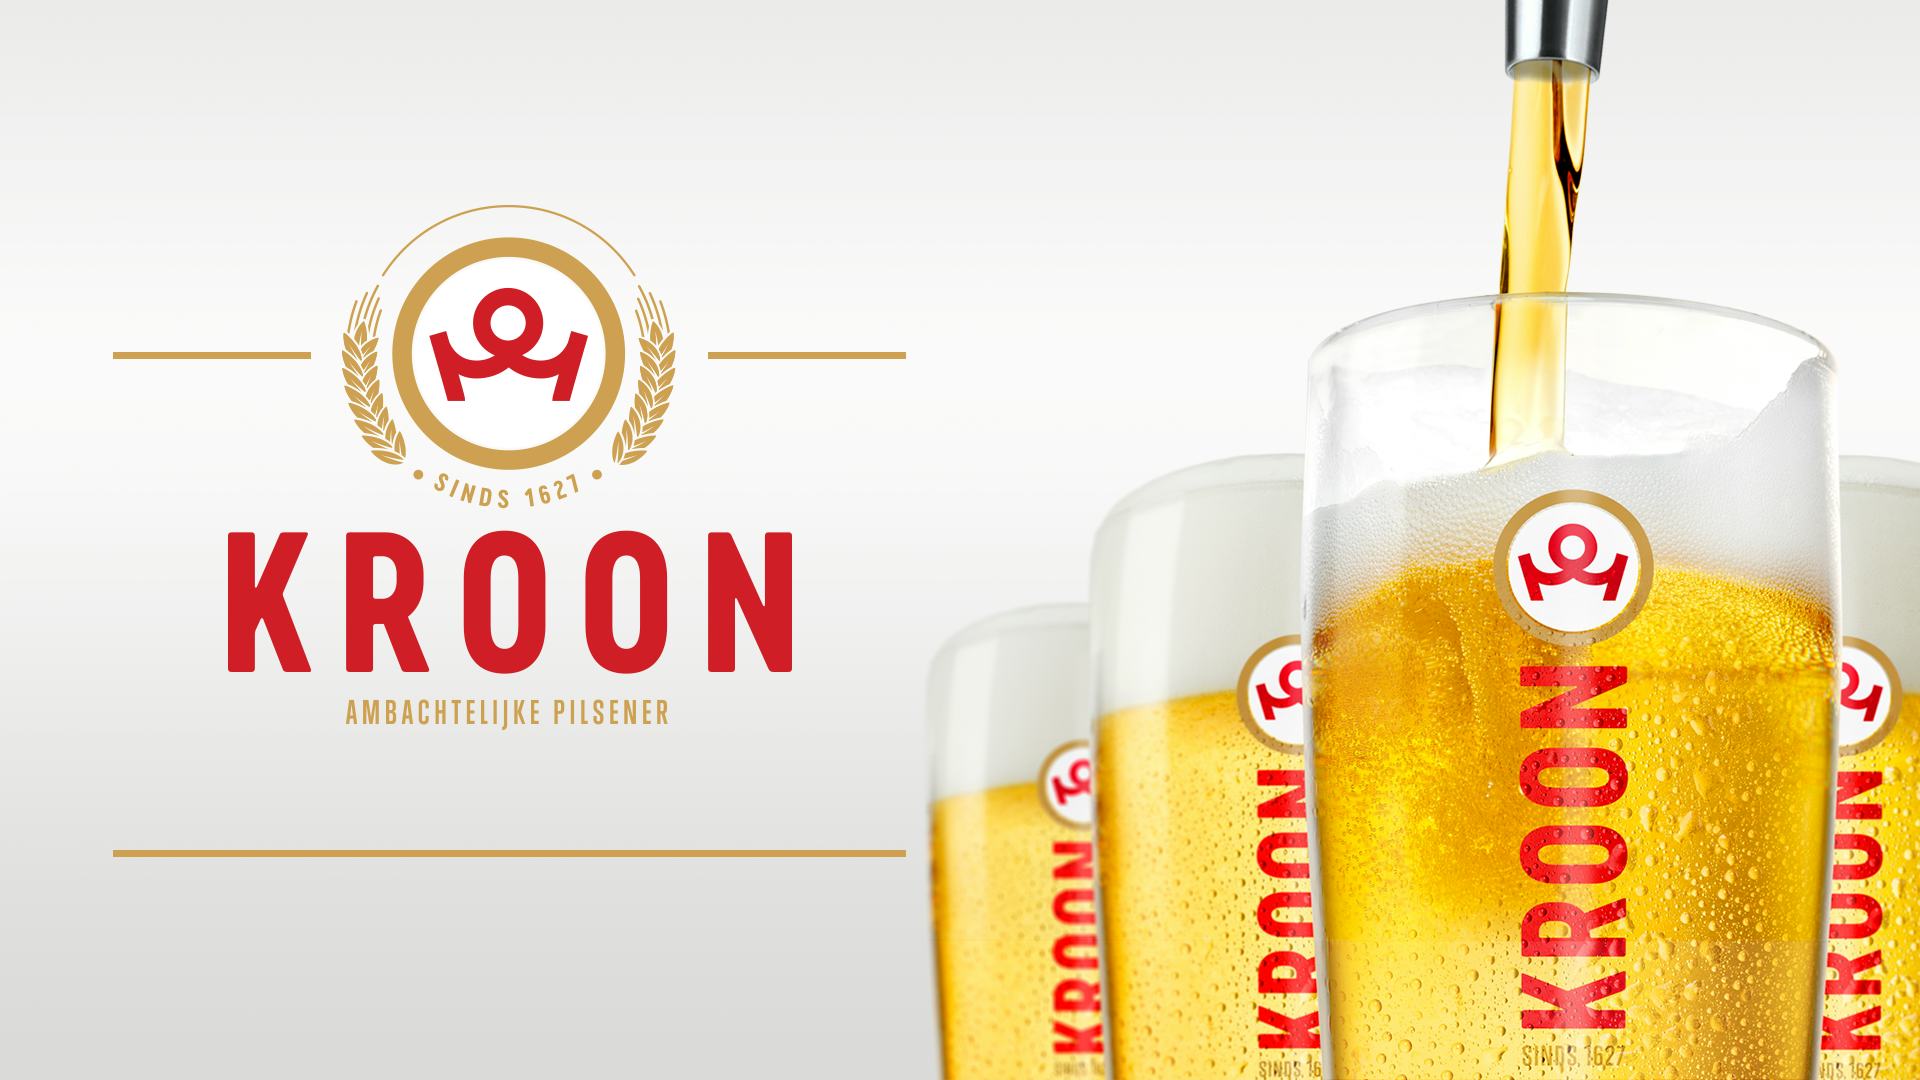 ‘Online bier bestellen: vaste lage prijzen voor iedereen?’